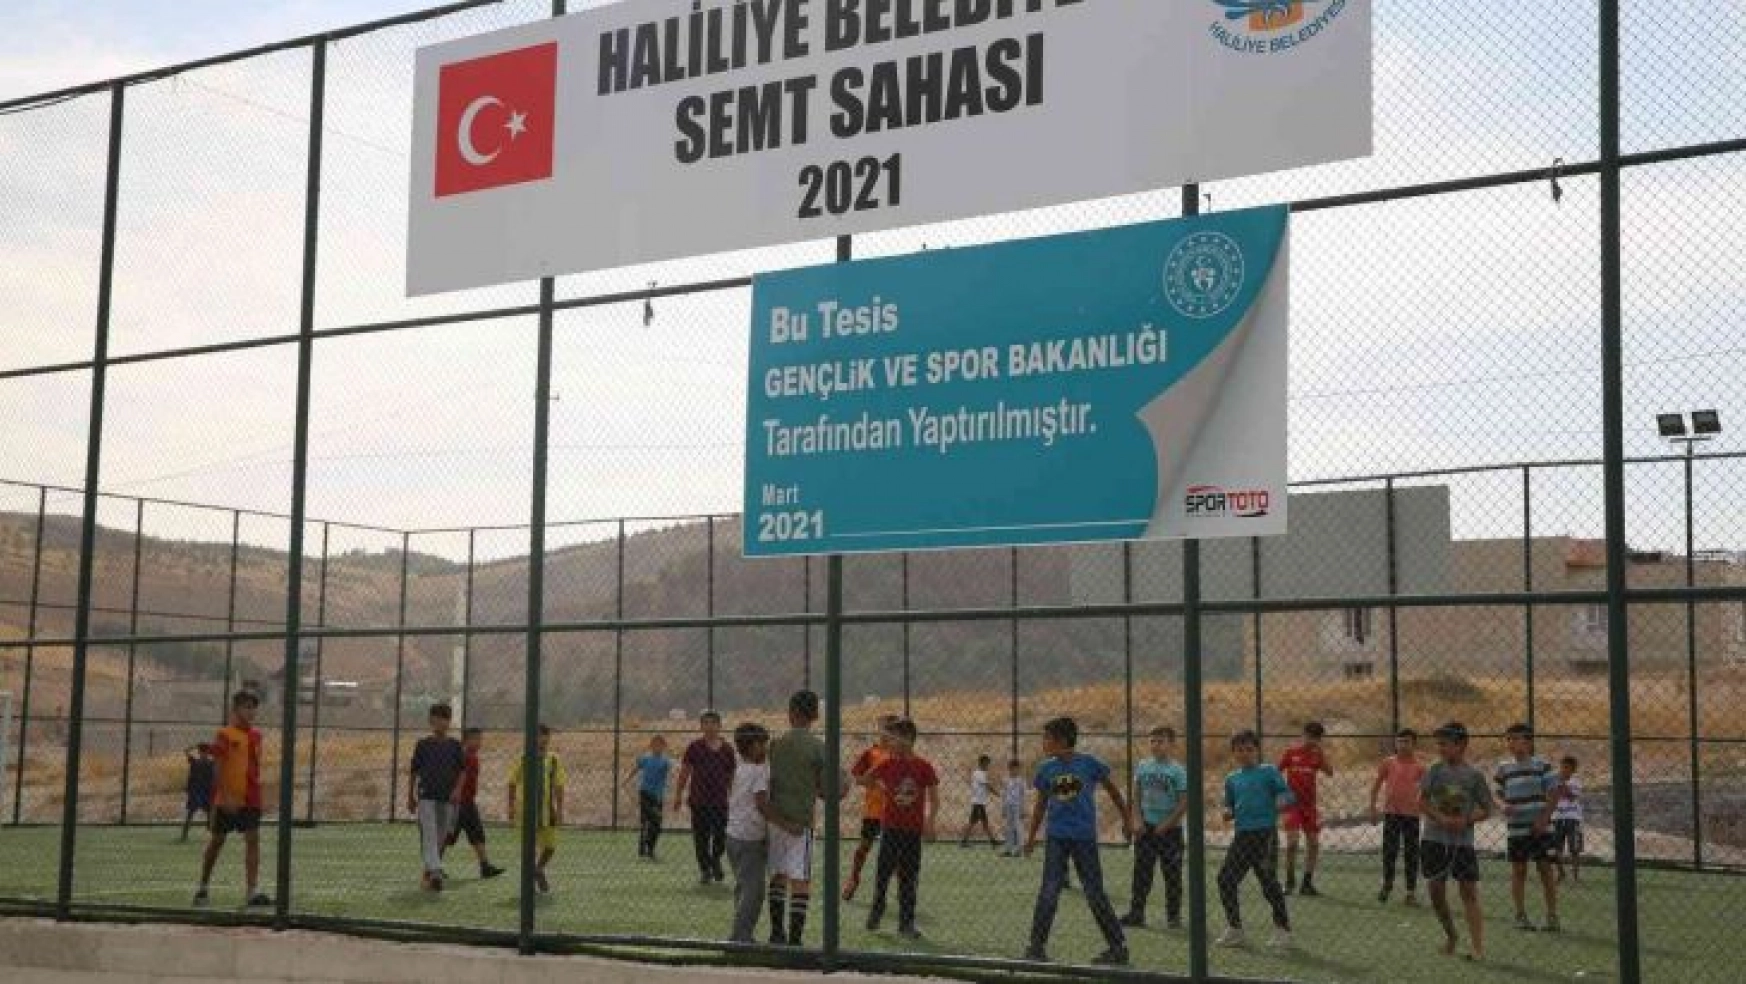 Haliliye'de semt sahaları gençlerin yeni spor adresi